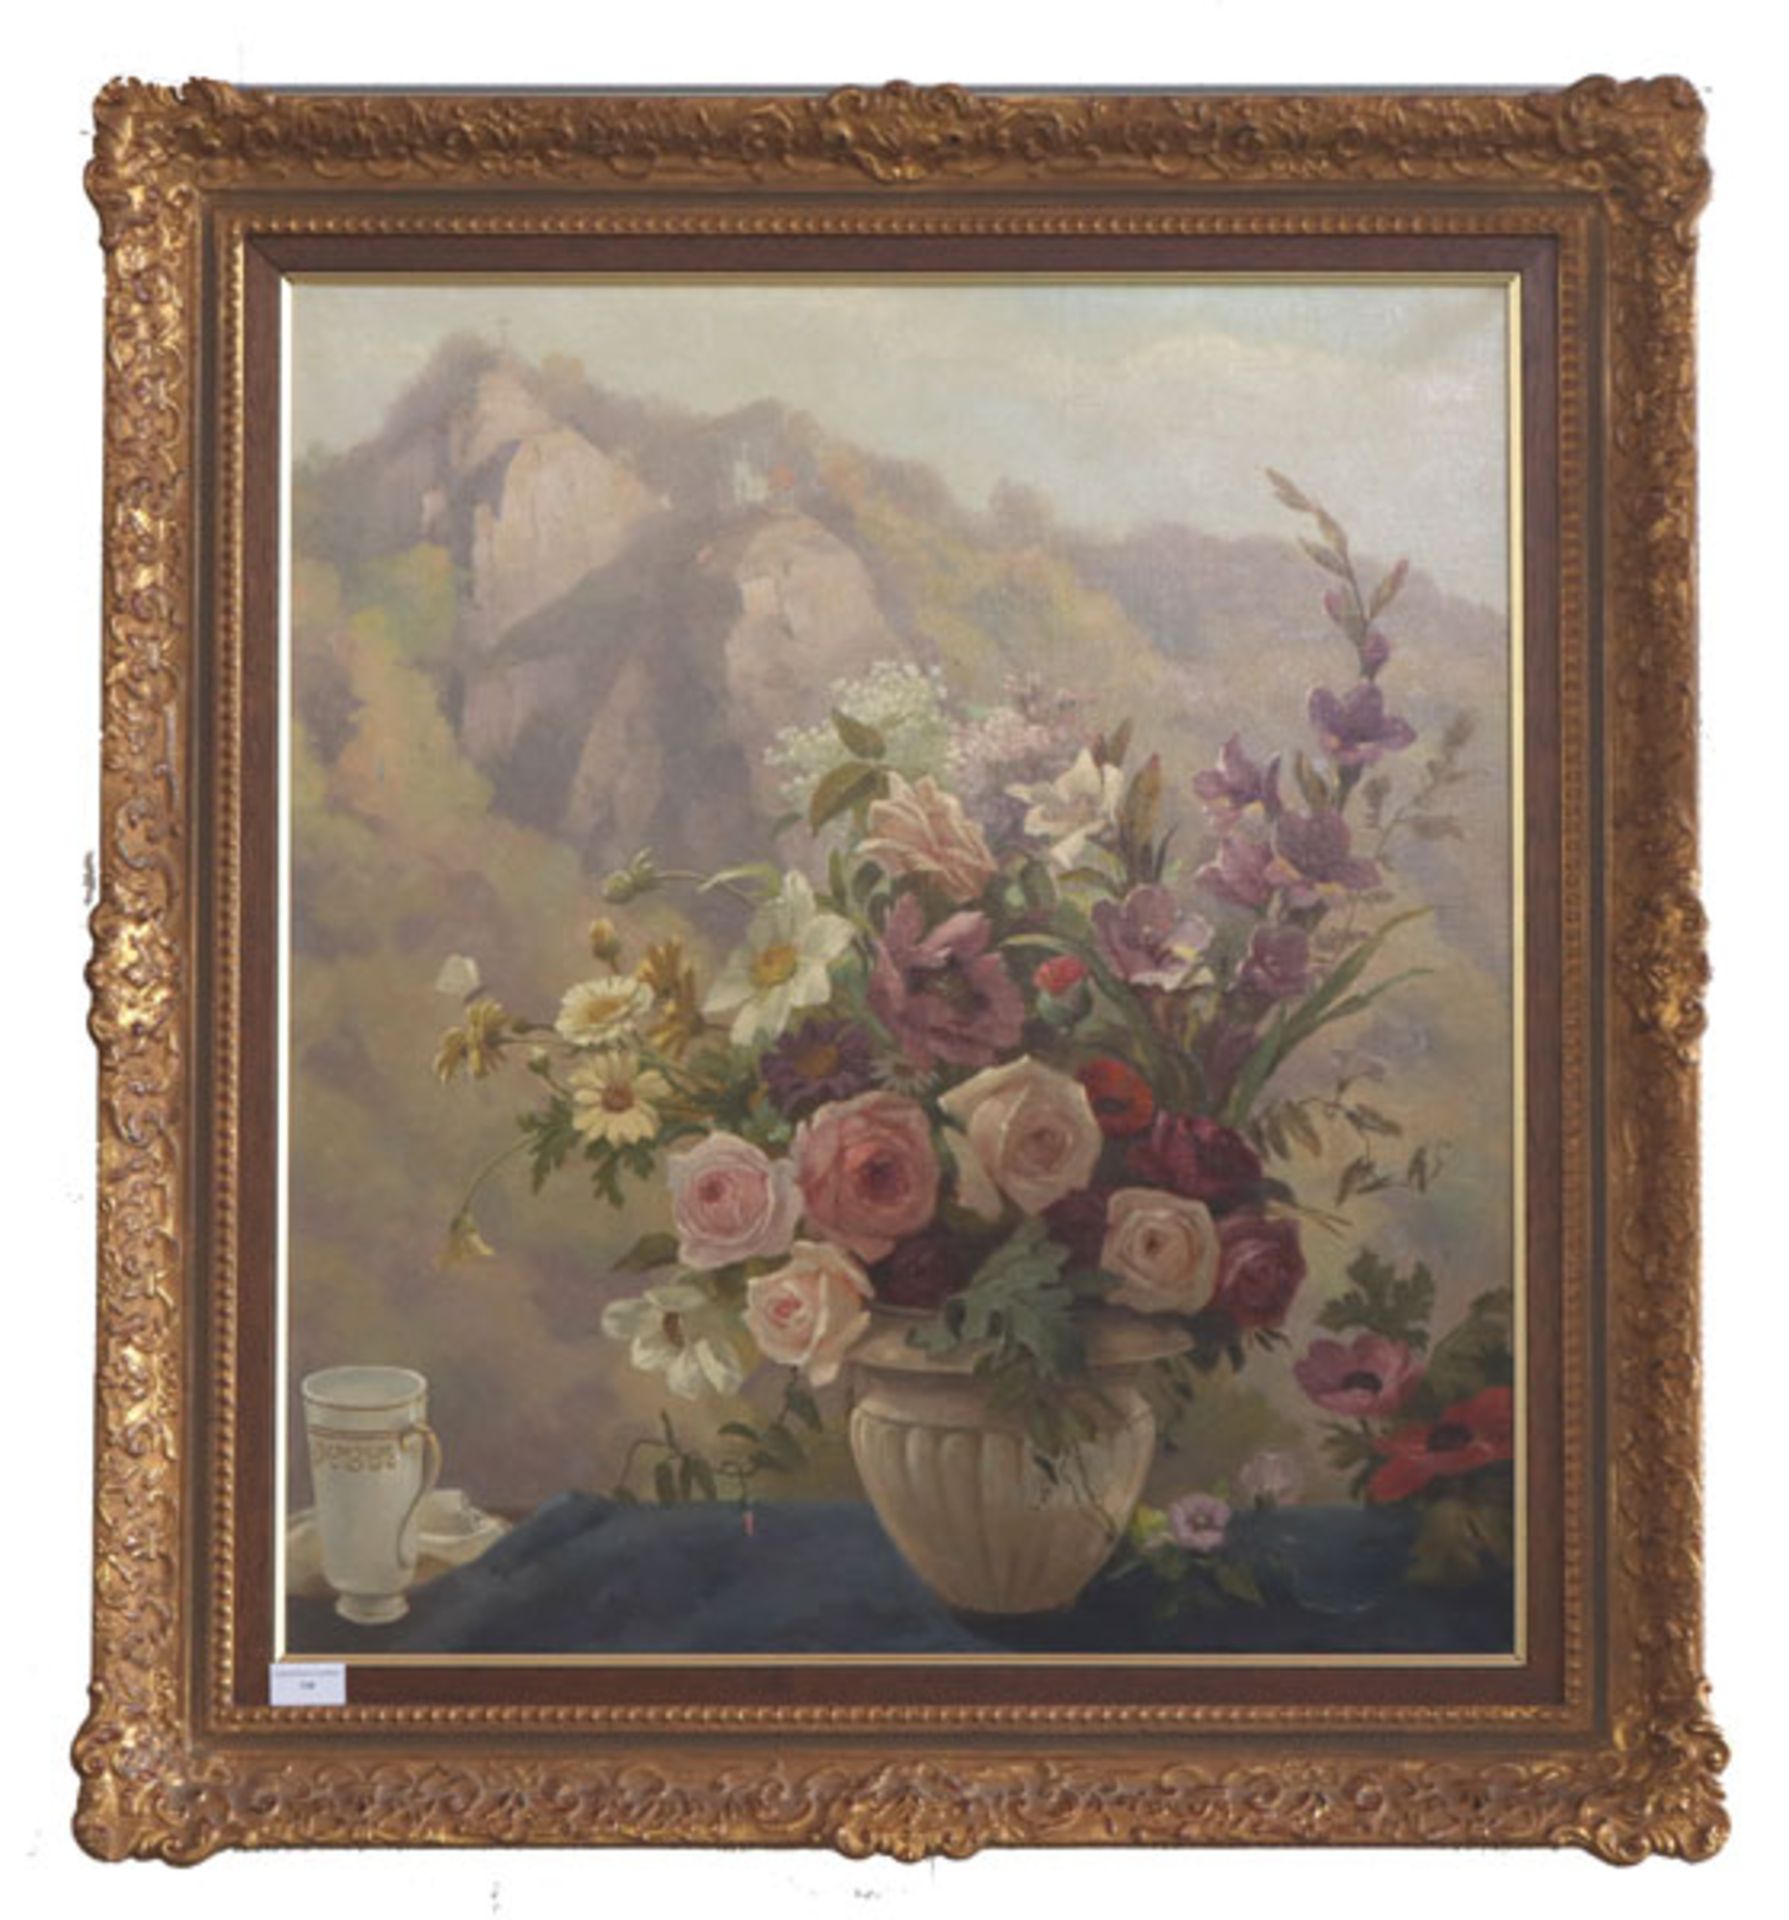 Gemälde ÖL/LW 'Blumenstillleben vor Hochgebirge', signiert W. Kraus, gerahmt, incl. Rahmen 90 cm x